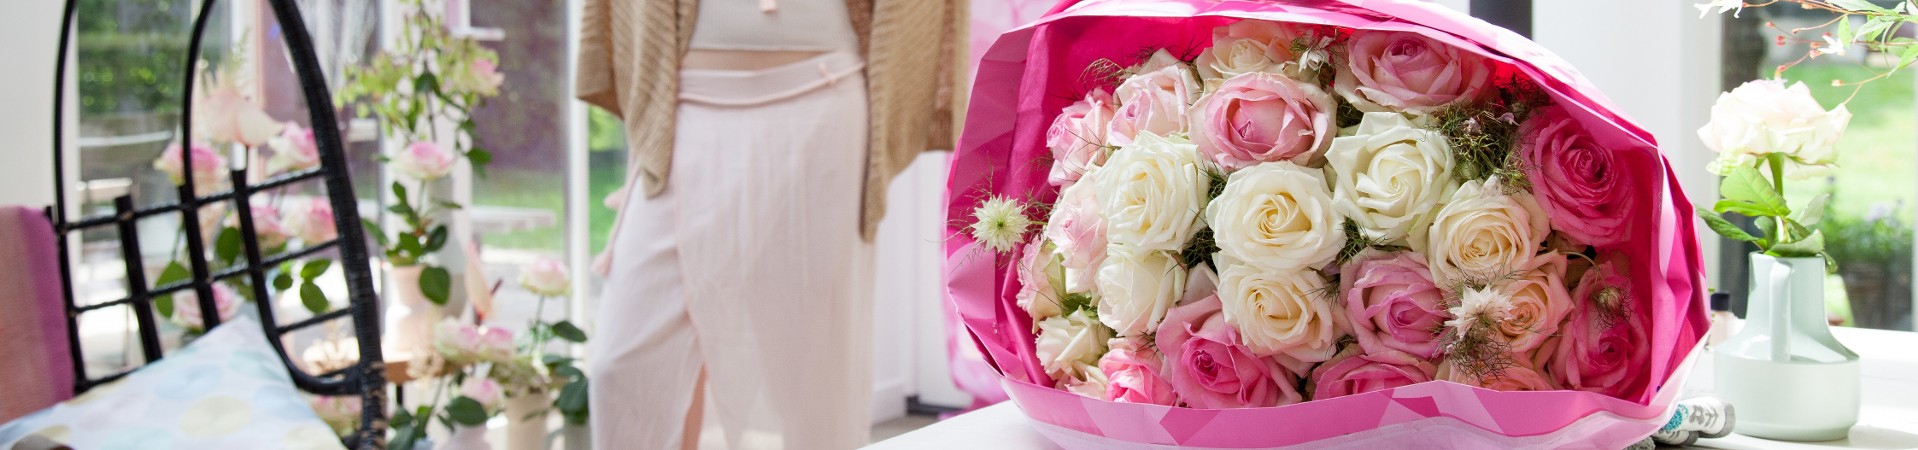 Десятки тысяч роз Avalanche+® на свадьбе голливудской пары